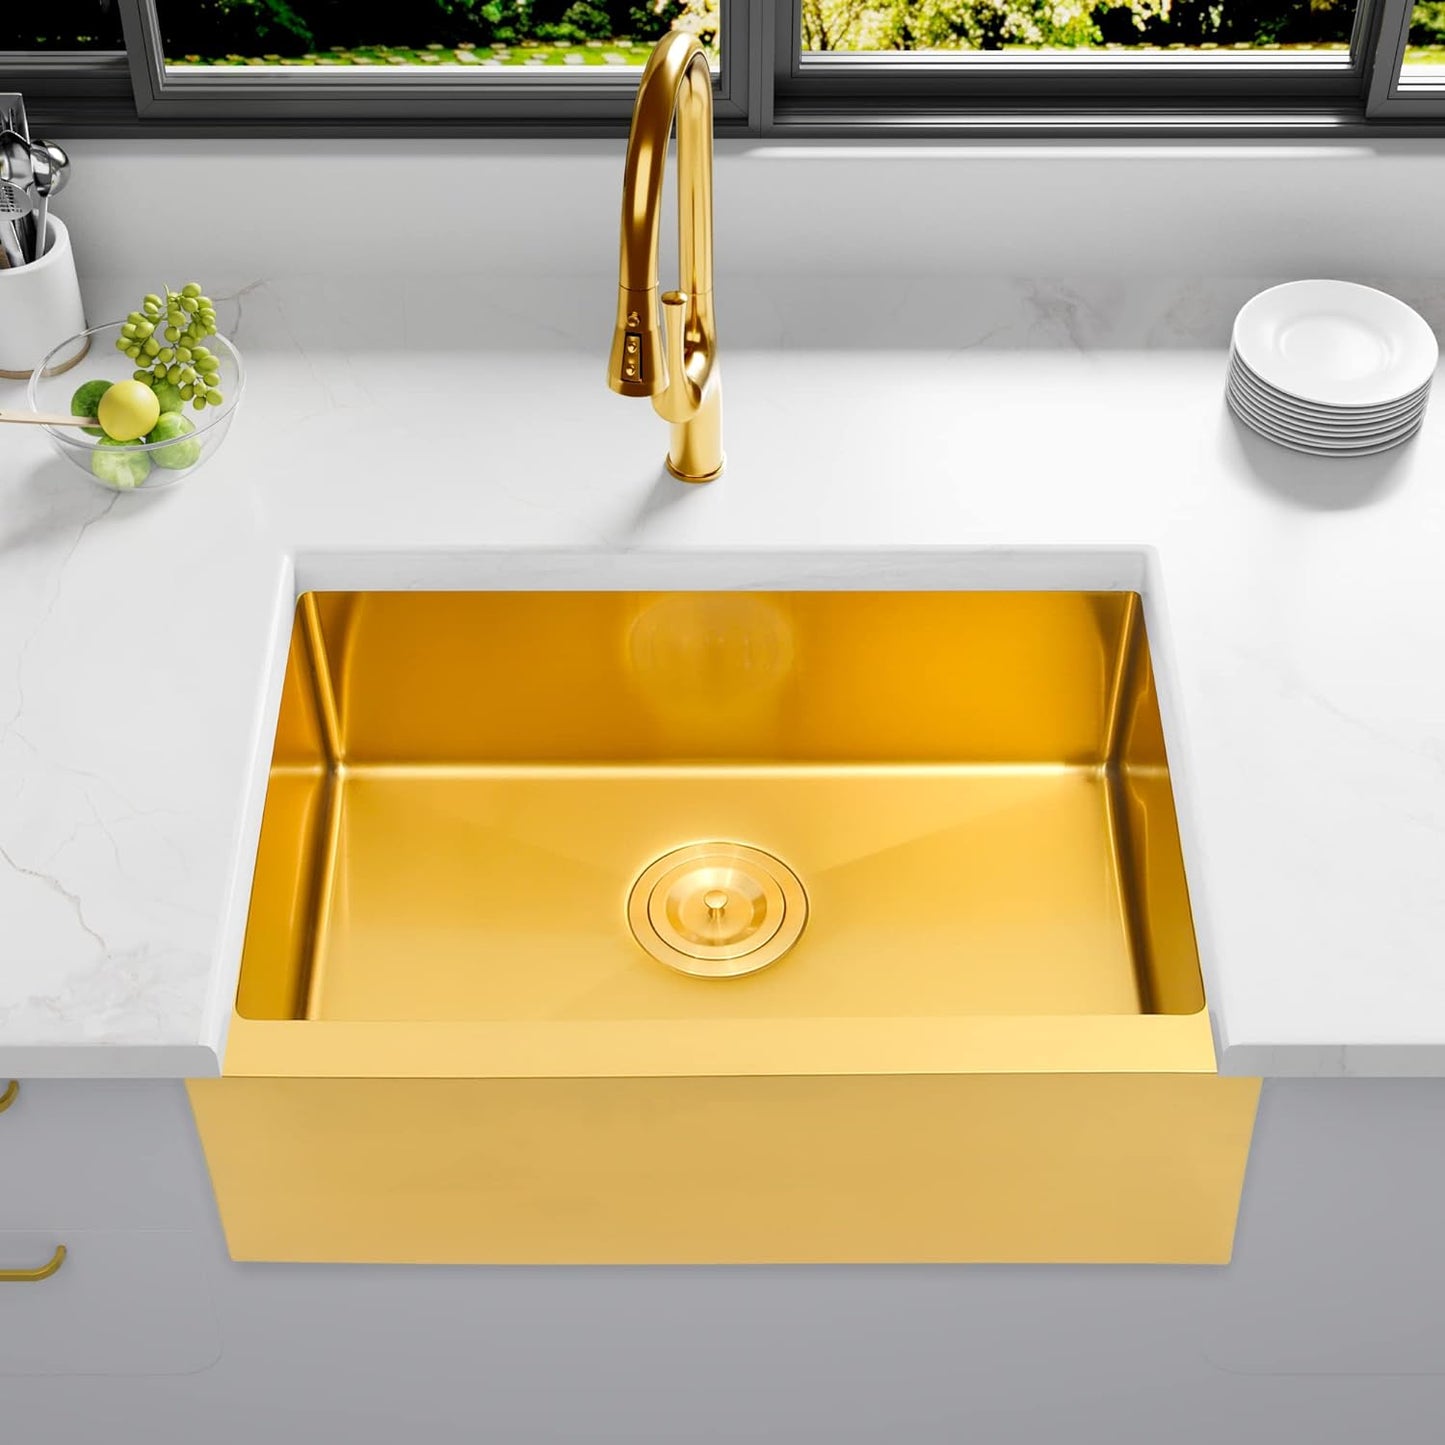 MILOSEN Undermount Gold RV Kitchen Sink, Stainless Steel Farmhouse Apronfront Kitchen Sink, Small Single bowl Apron Sink, 2316 inch Kitchen RV Sink, 7 inch Depth Kitchen RV Sinks (Gold, Farmhouse)